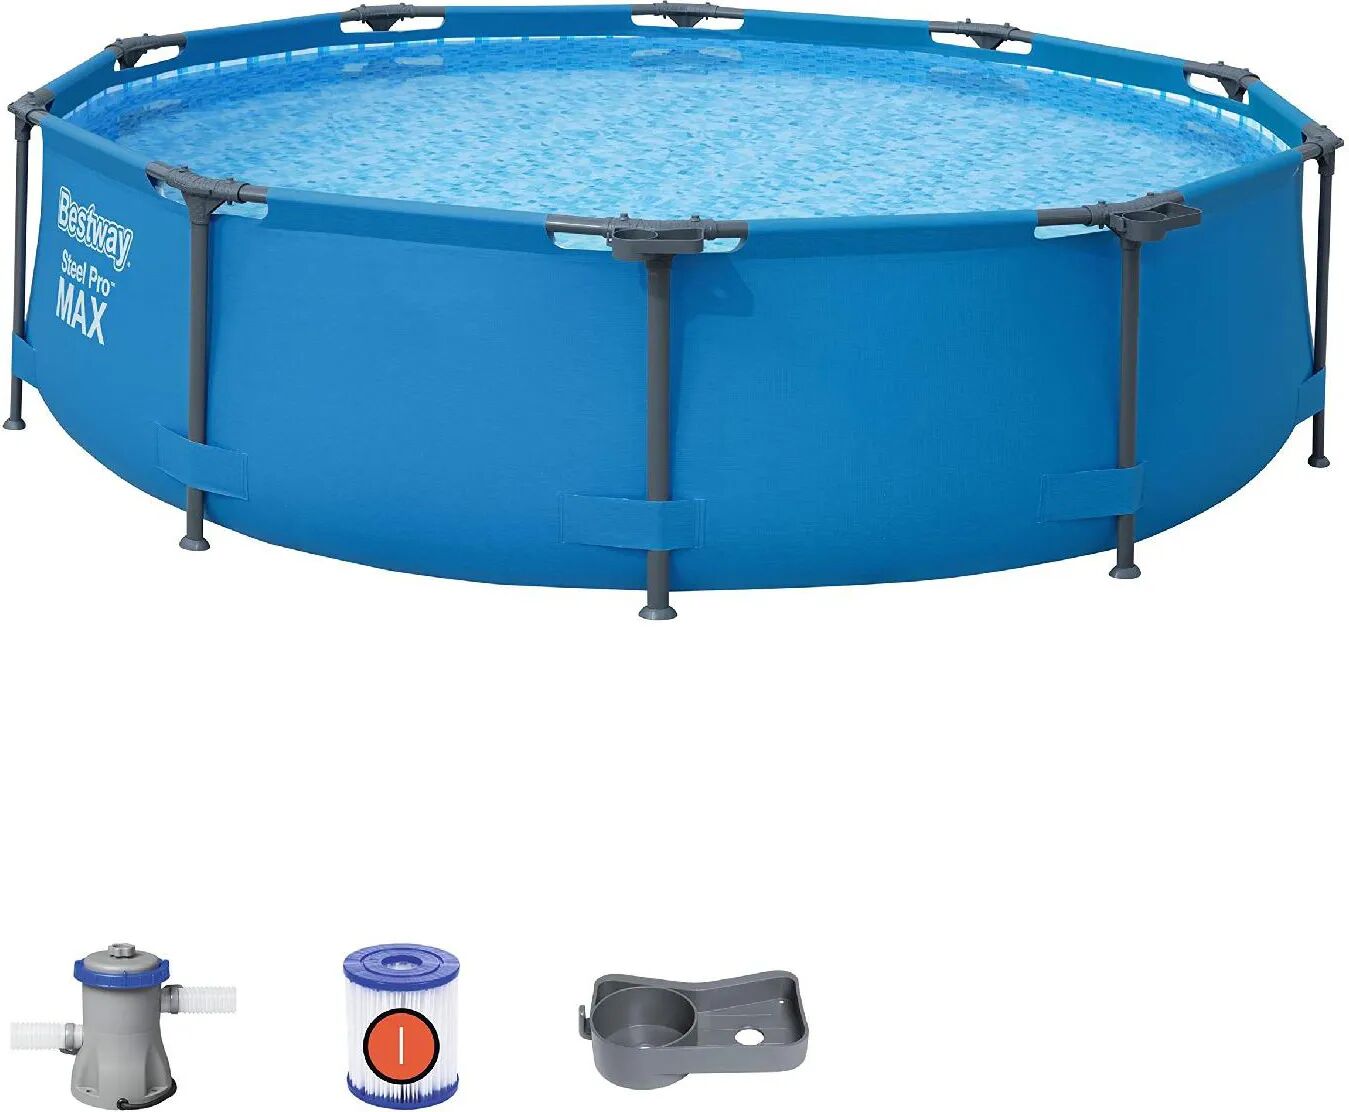 bestway piscina fuori terra con telaio portante piscina esterna da giardino in pvc triplice strato rotonda Ø 305x76h cm con pompa filtro da 1.249 lt/h - 56408 steel pro frame